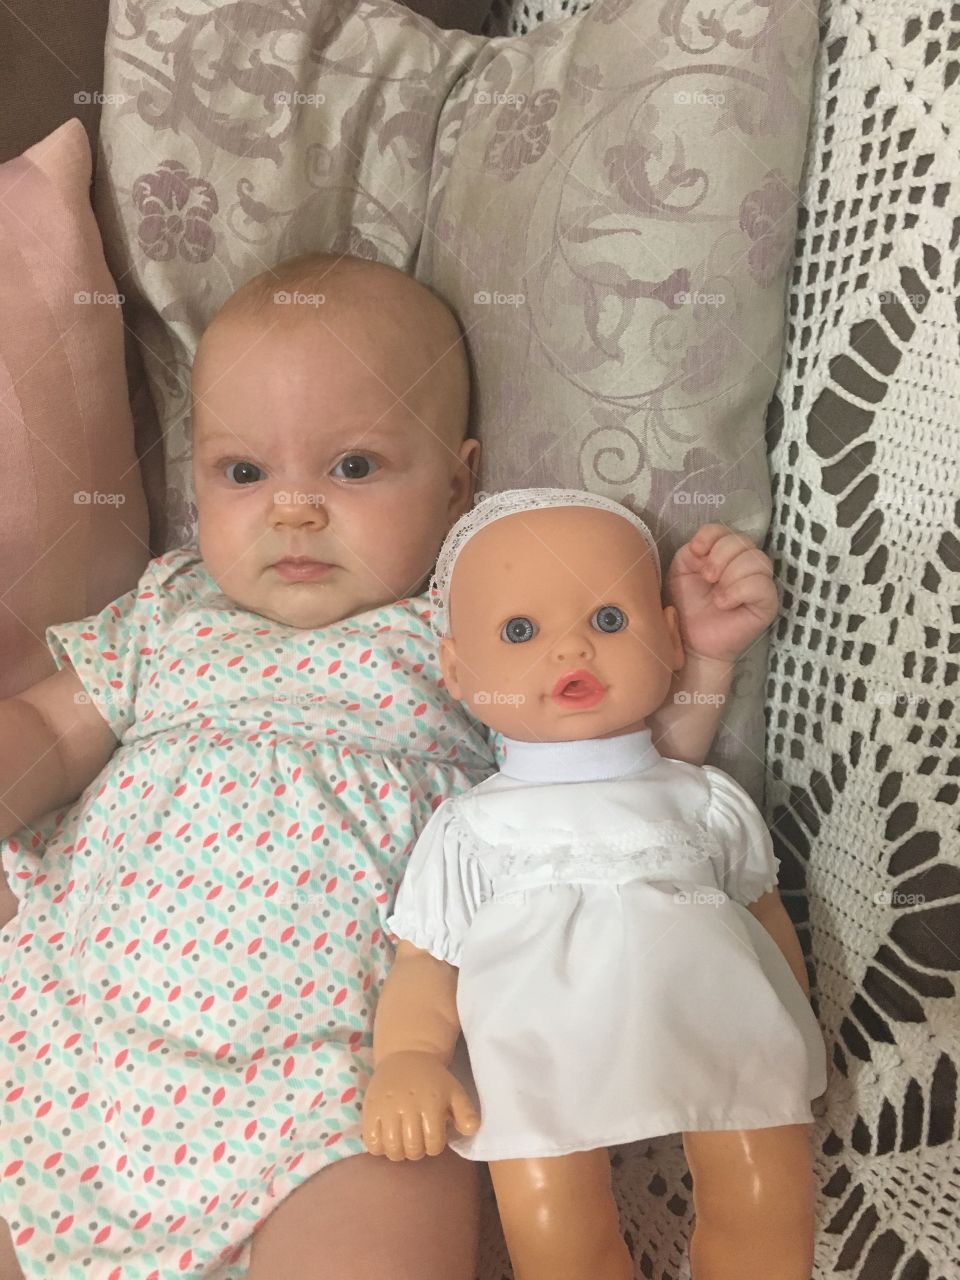 Minha caçulinha e sua colega de bagunça. Duas bonecas!
👨‍👩‍👧‍👧
#PaiDeMeninas
#boneca
#toy
#família